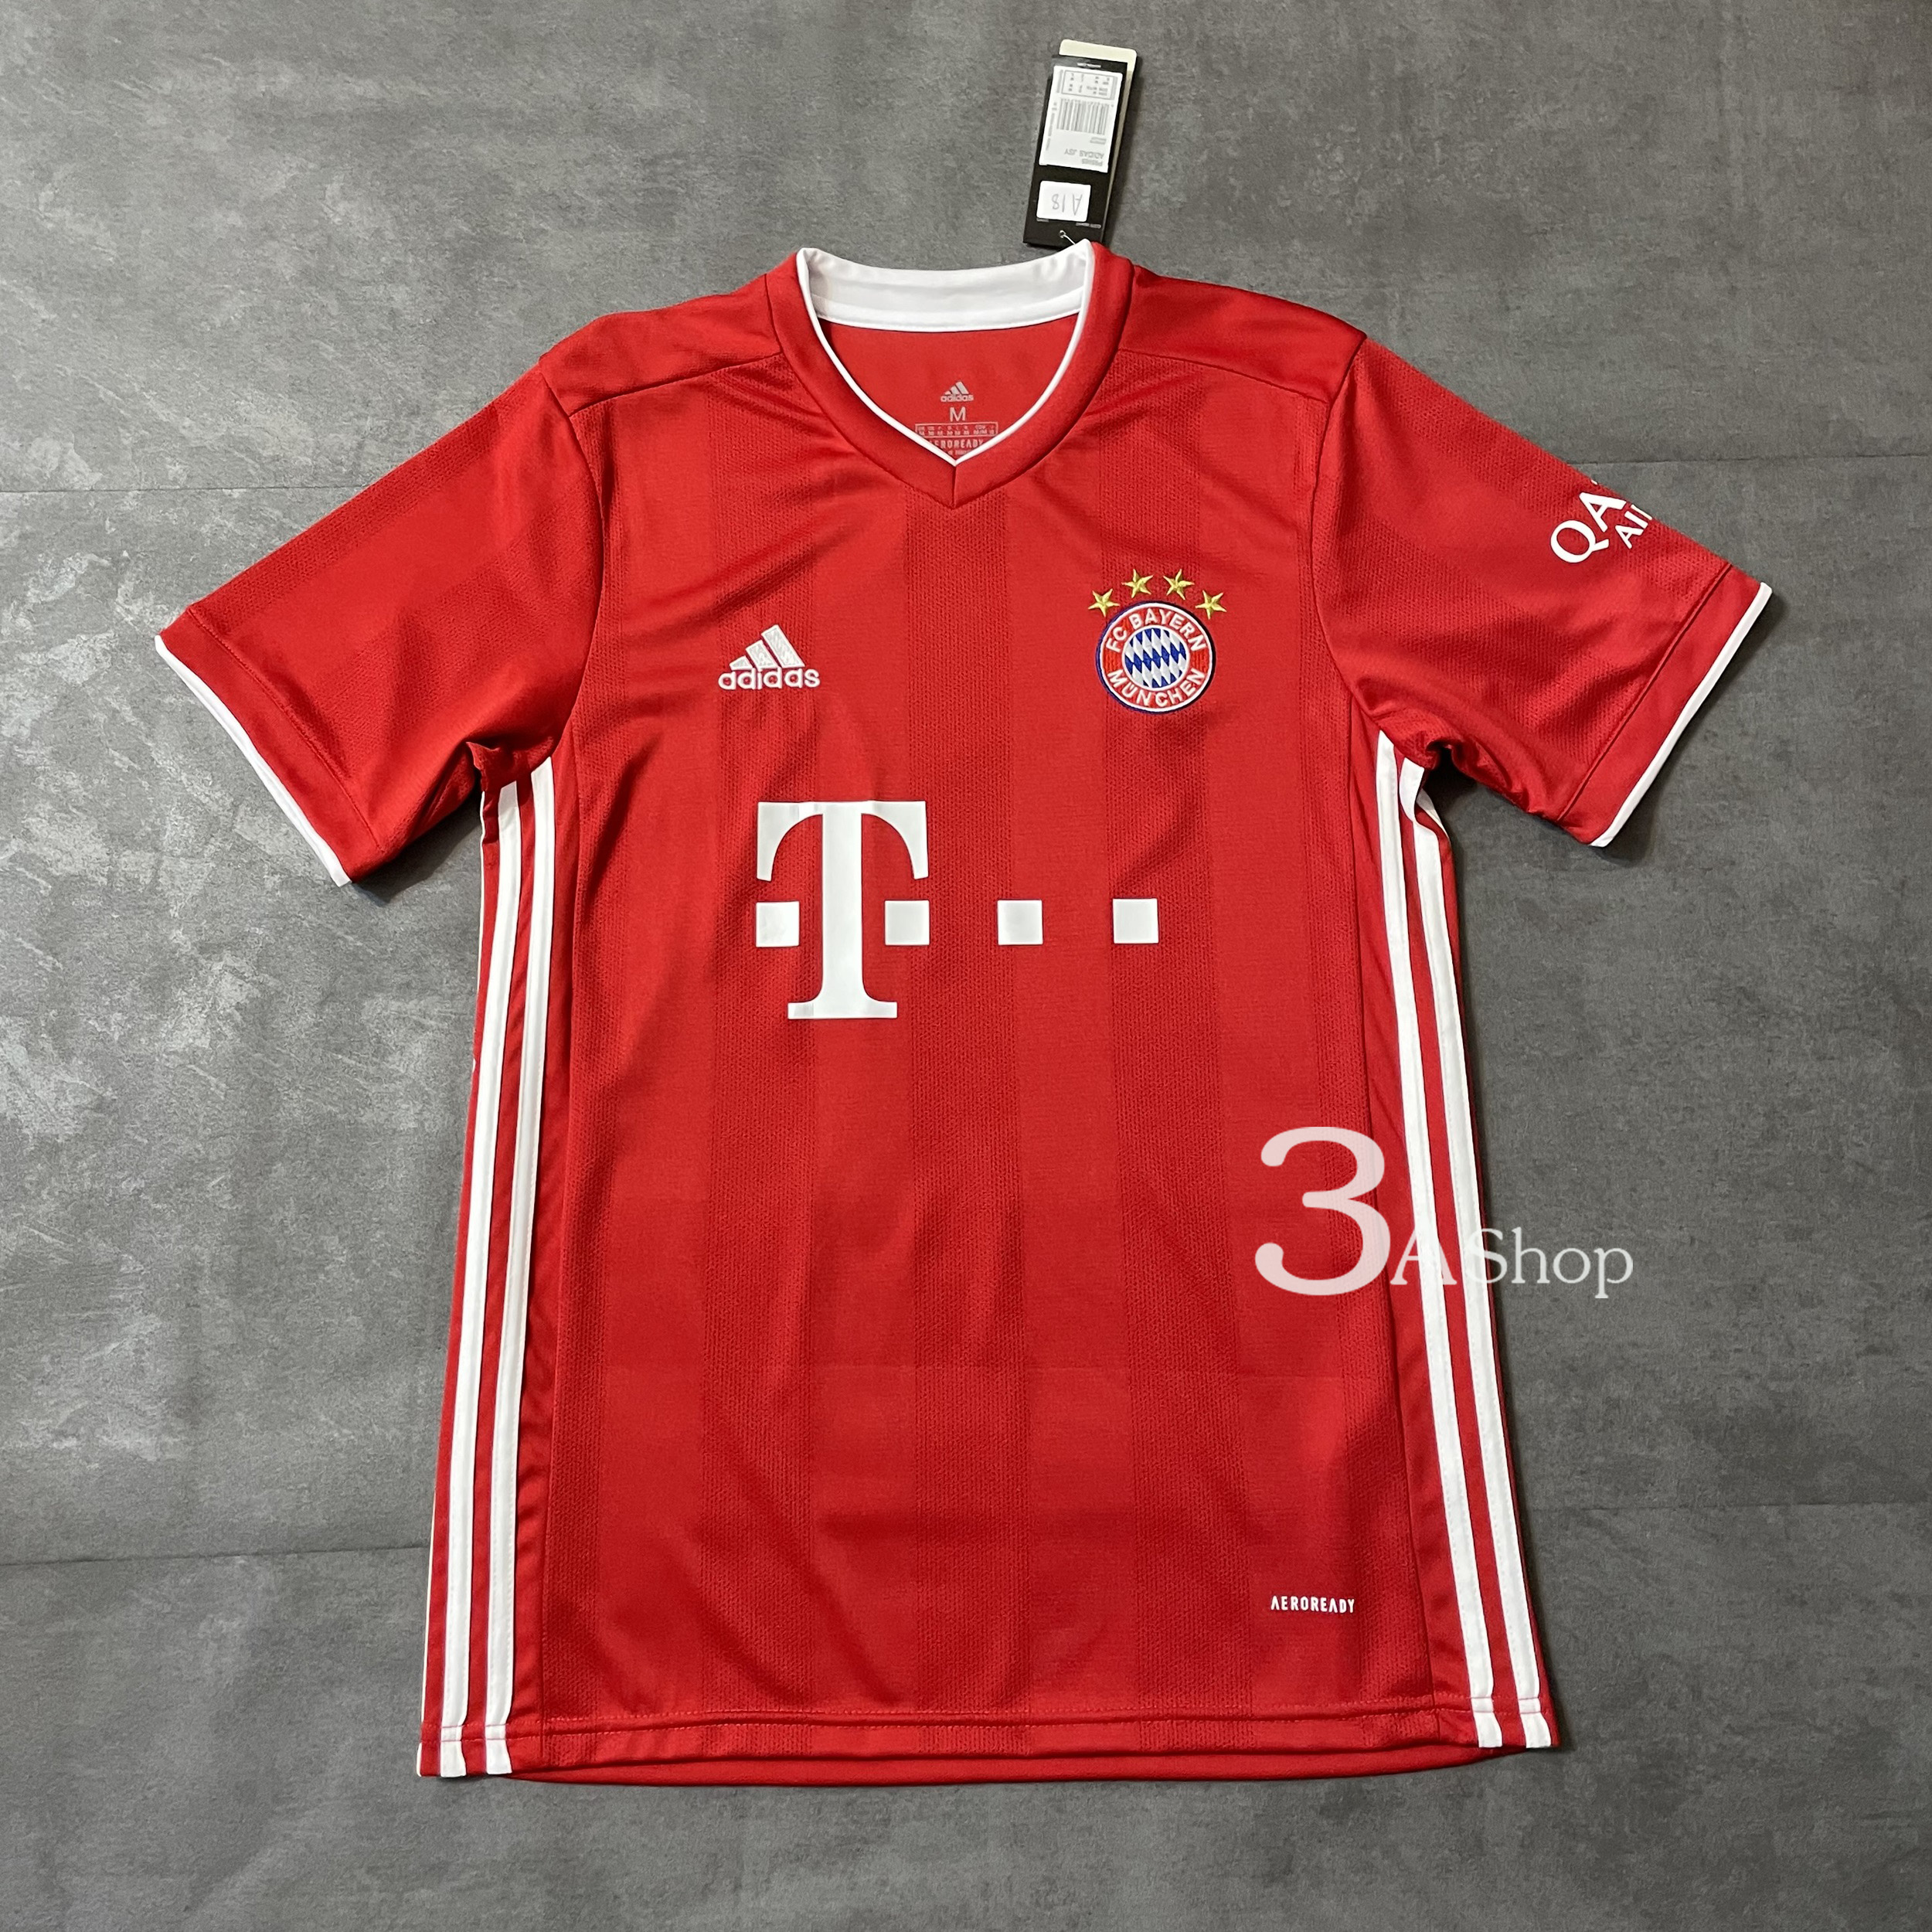 Bayern Munich 21 FOOTBALL SHIRT SOCCER  เสื้อบอล เสื้อฟุตบอลชาย เสื้อบอลชาย เสื้อฟุตบอล เสื้อกีฬาชาย2021 เสื้อทีมบาเยิร์น มิวนิก ปี20/21 เกรด 3A